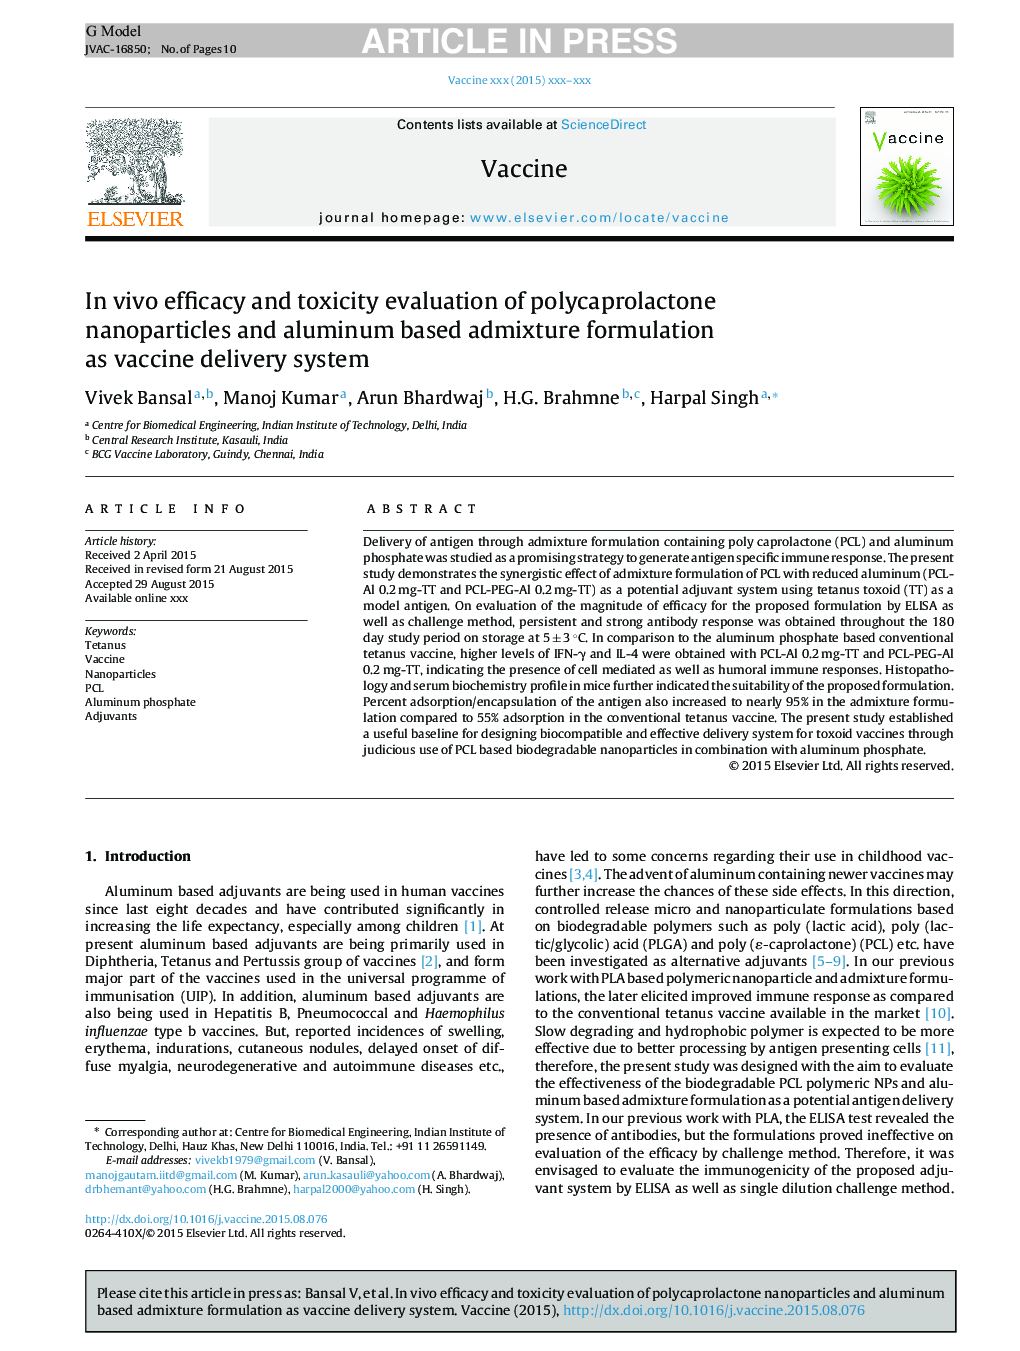 ارزیابی اثربخشی و سمیت ویروس نانوذرات پلی کاپرولاکتون و فرمولاسیون مخلوط آلومینیوم به عنوان سیستم تحویل واکسن 